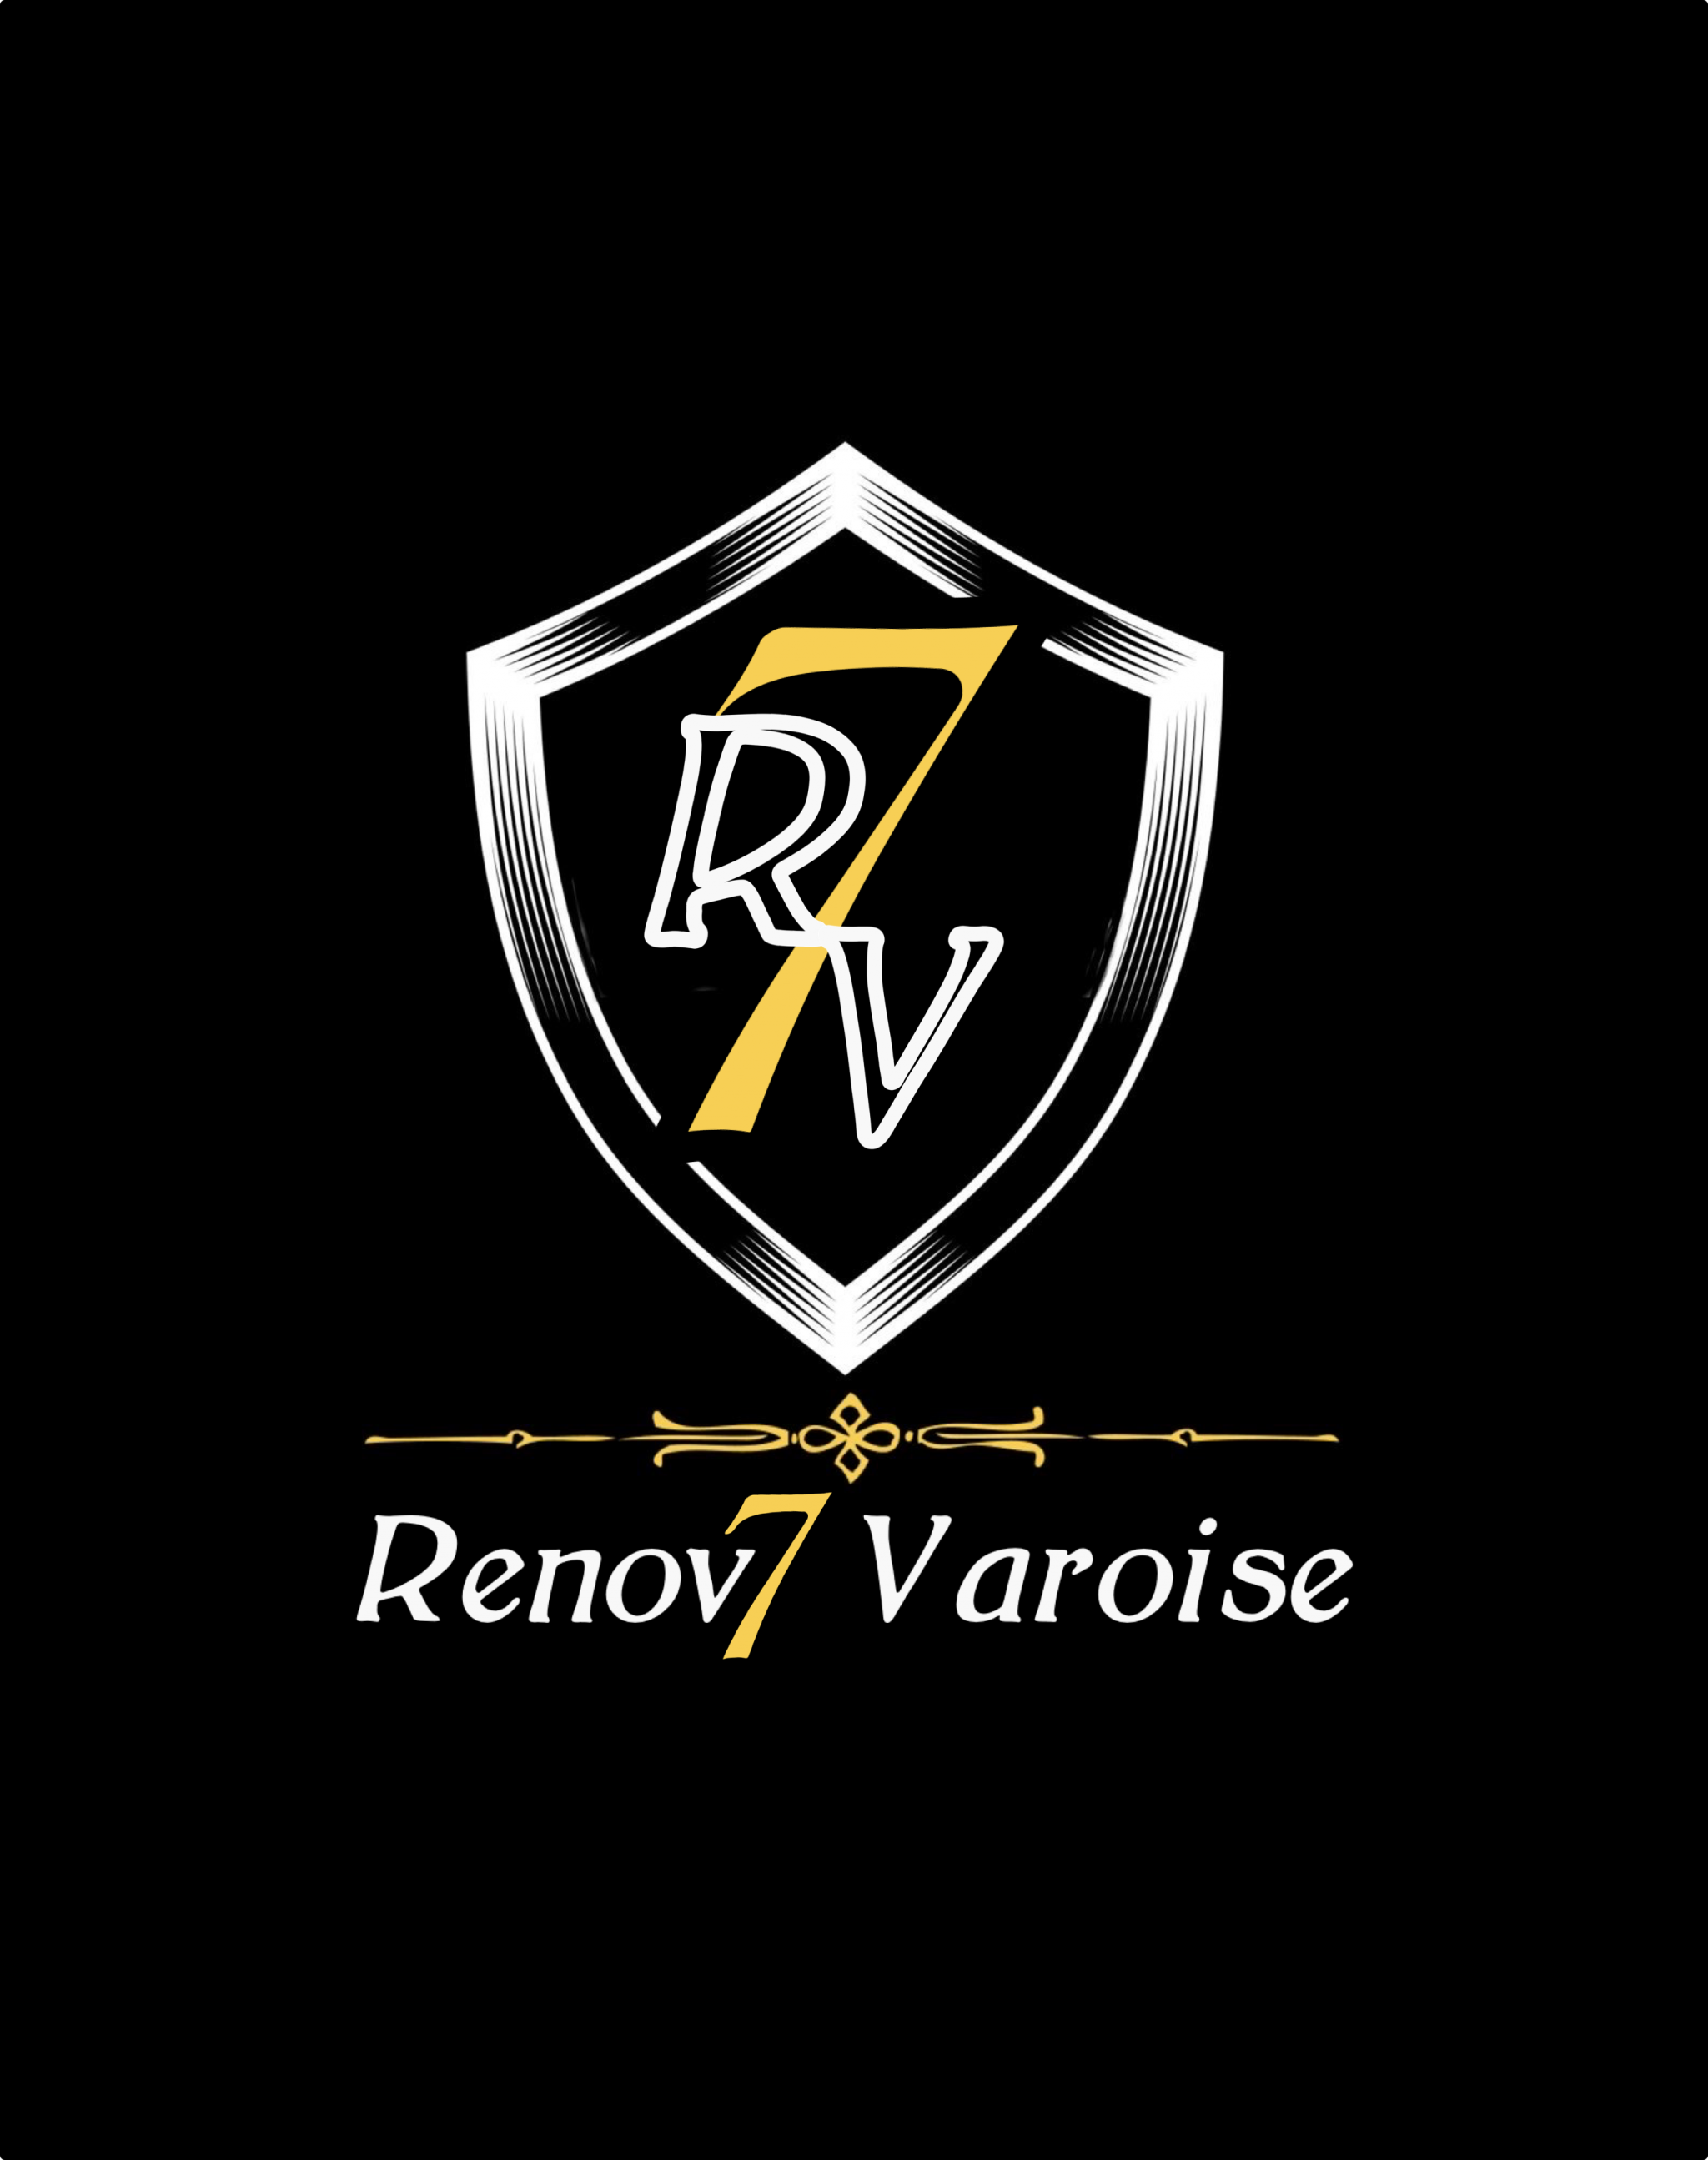 Logo de Renov7 varoise, société de travaux en Ravalement de façades